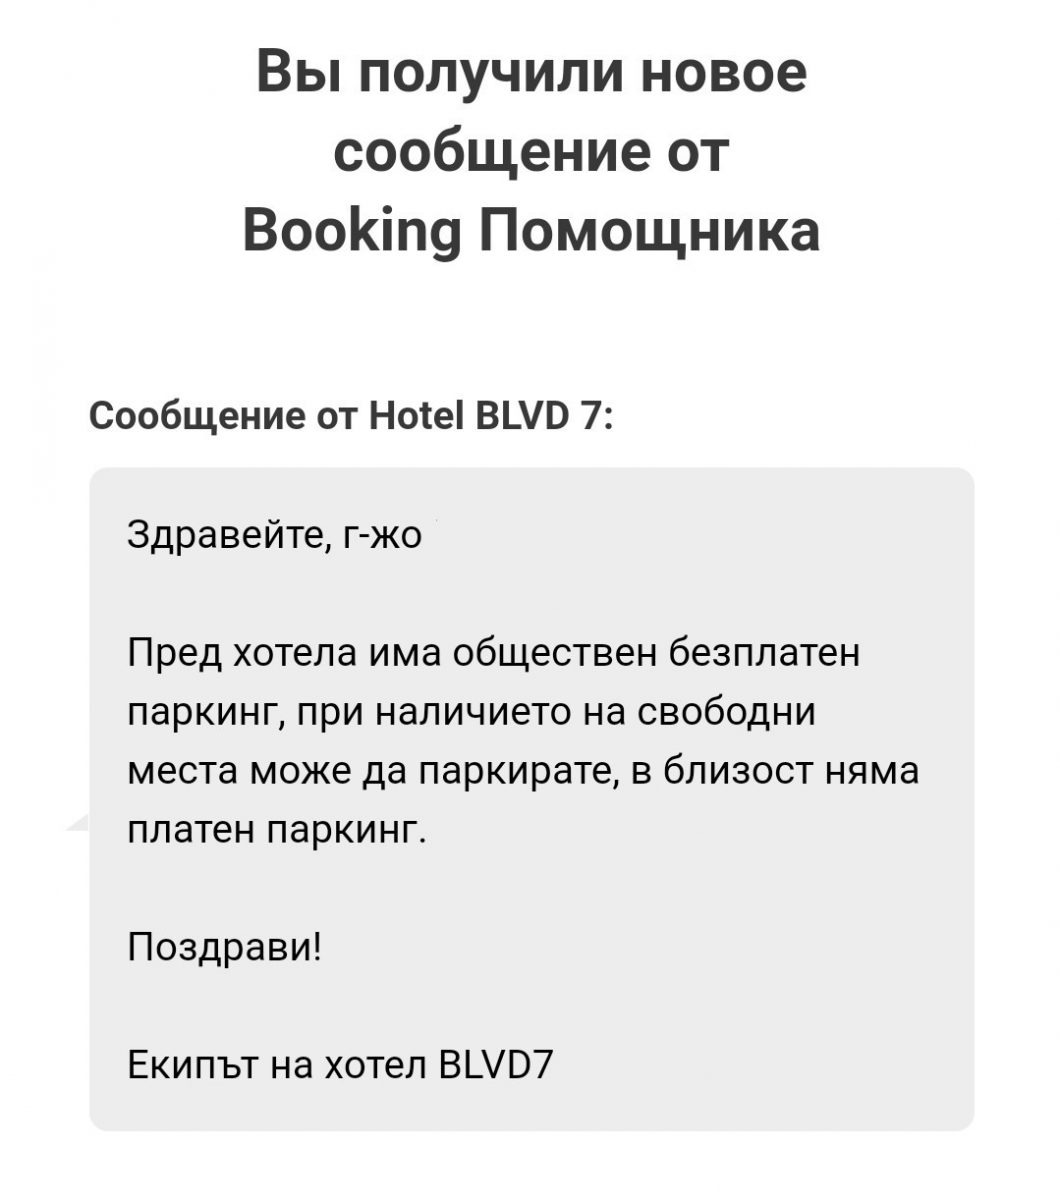 Сообщение от отеля BLVD7 о том, что паркинг у них только общественный, гарантий нет